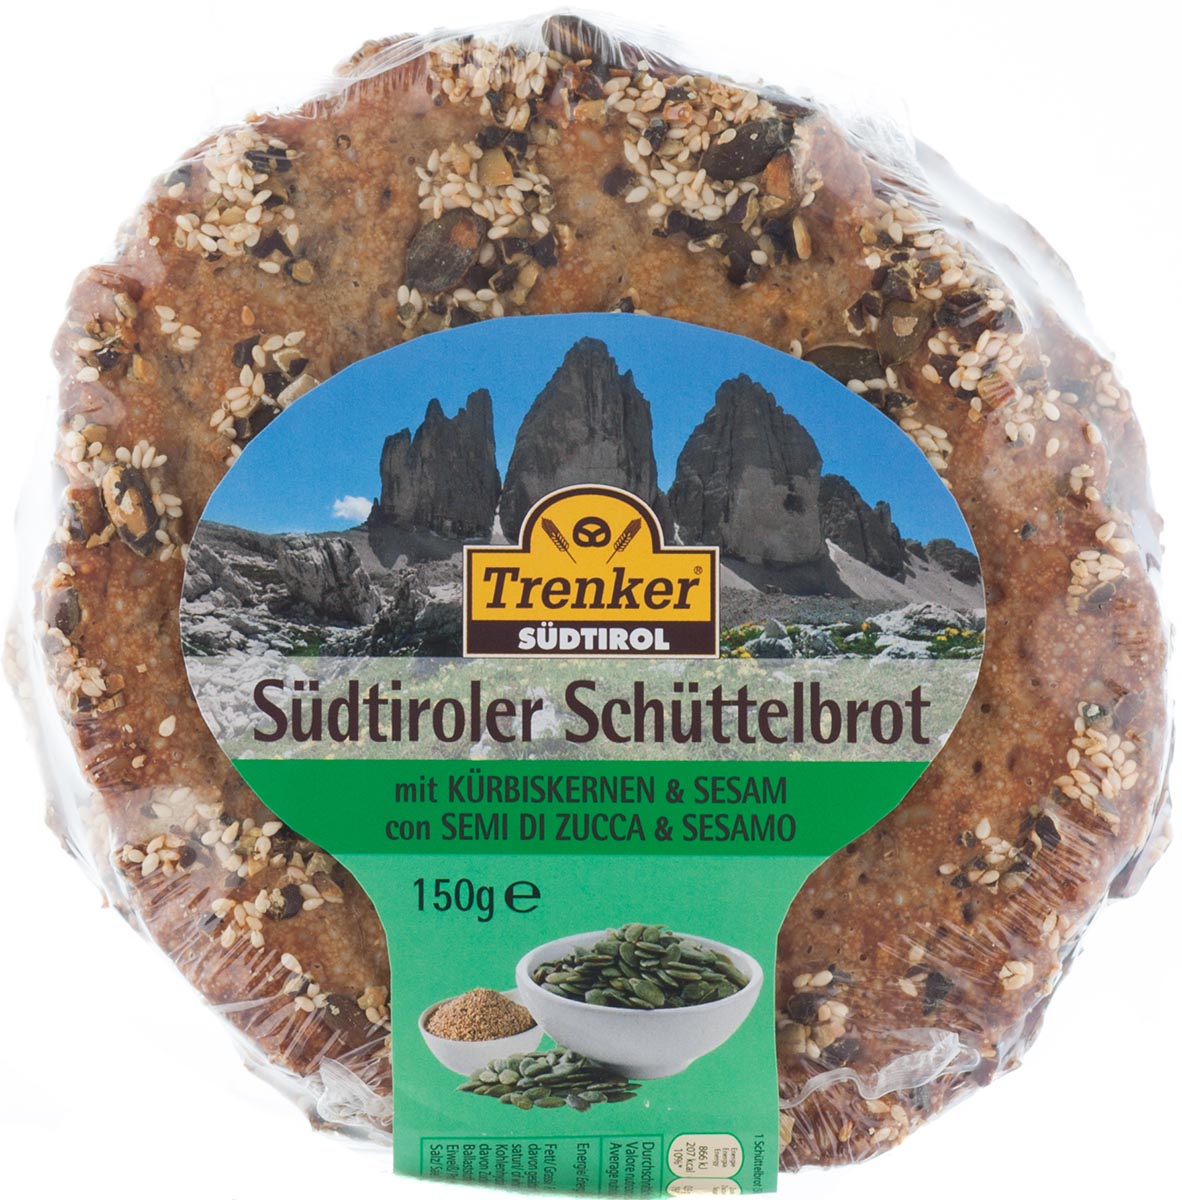 Südtiroler Schüttelbrot mit Kürbiskernen & Sesam